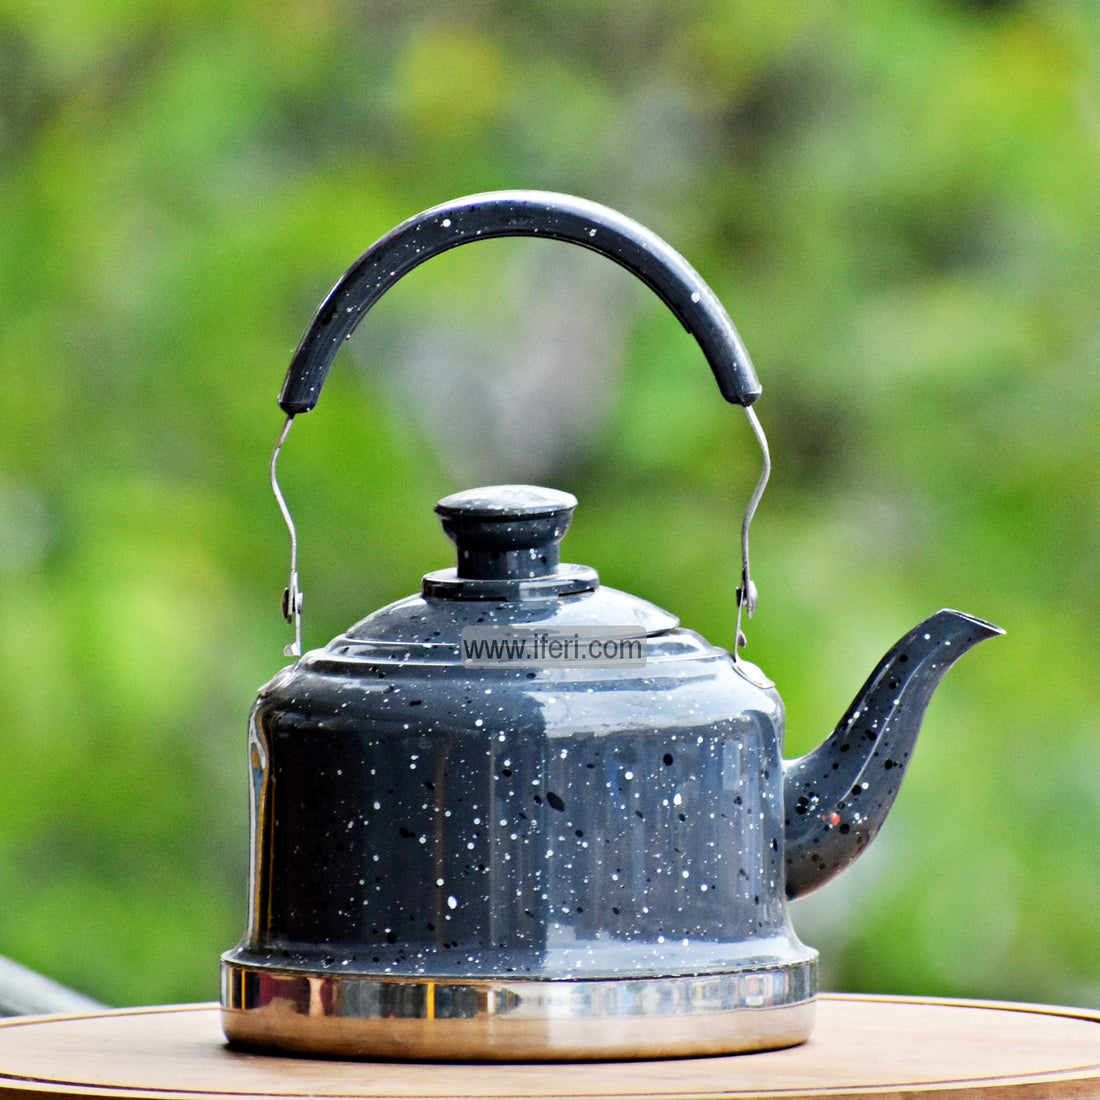 Buy Metal Tea Pot / Kettle Online from iferi.com in Bangladesh